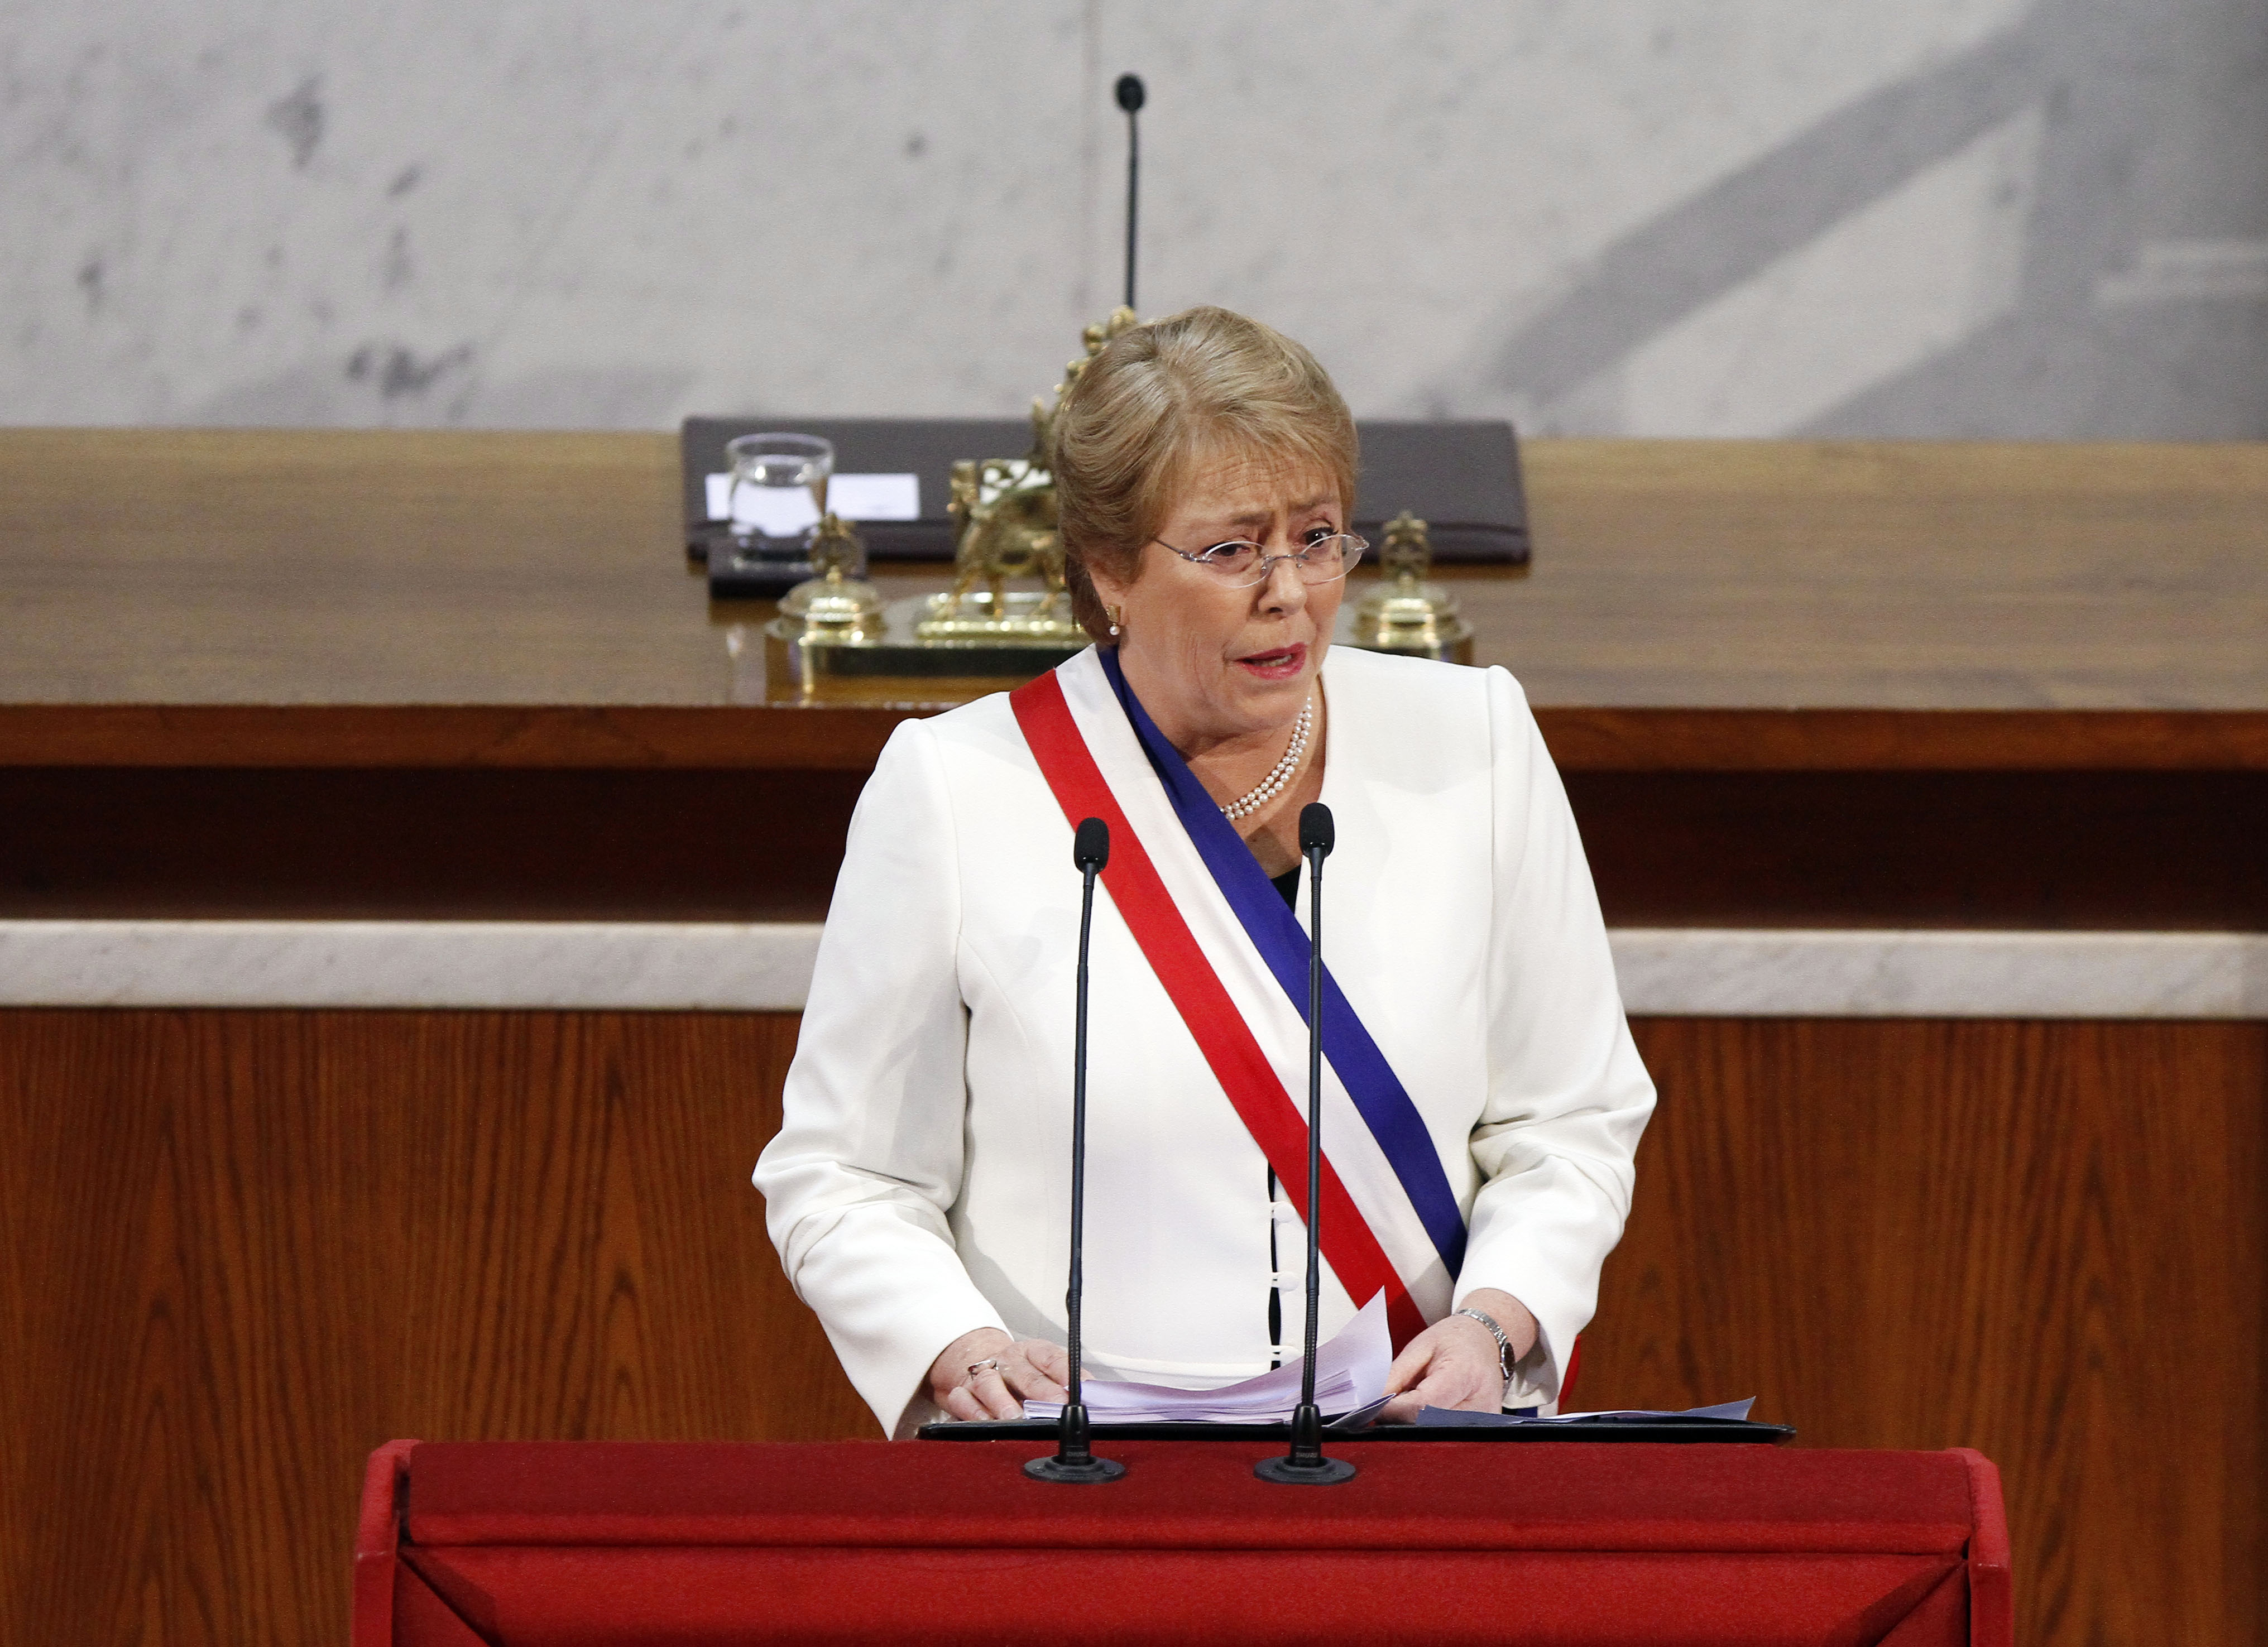 21 de Mayo de 2015/VALPARAISO La presidenta, Michelle Bachelet, realiza su segunda Cuenta Pública al país y ante la Sesión del Congreso Pleno en el salón plenario del Congreso Nacional  FOTO:RODRIGO SÀENZ/AGENCIAUNO